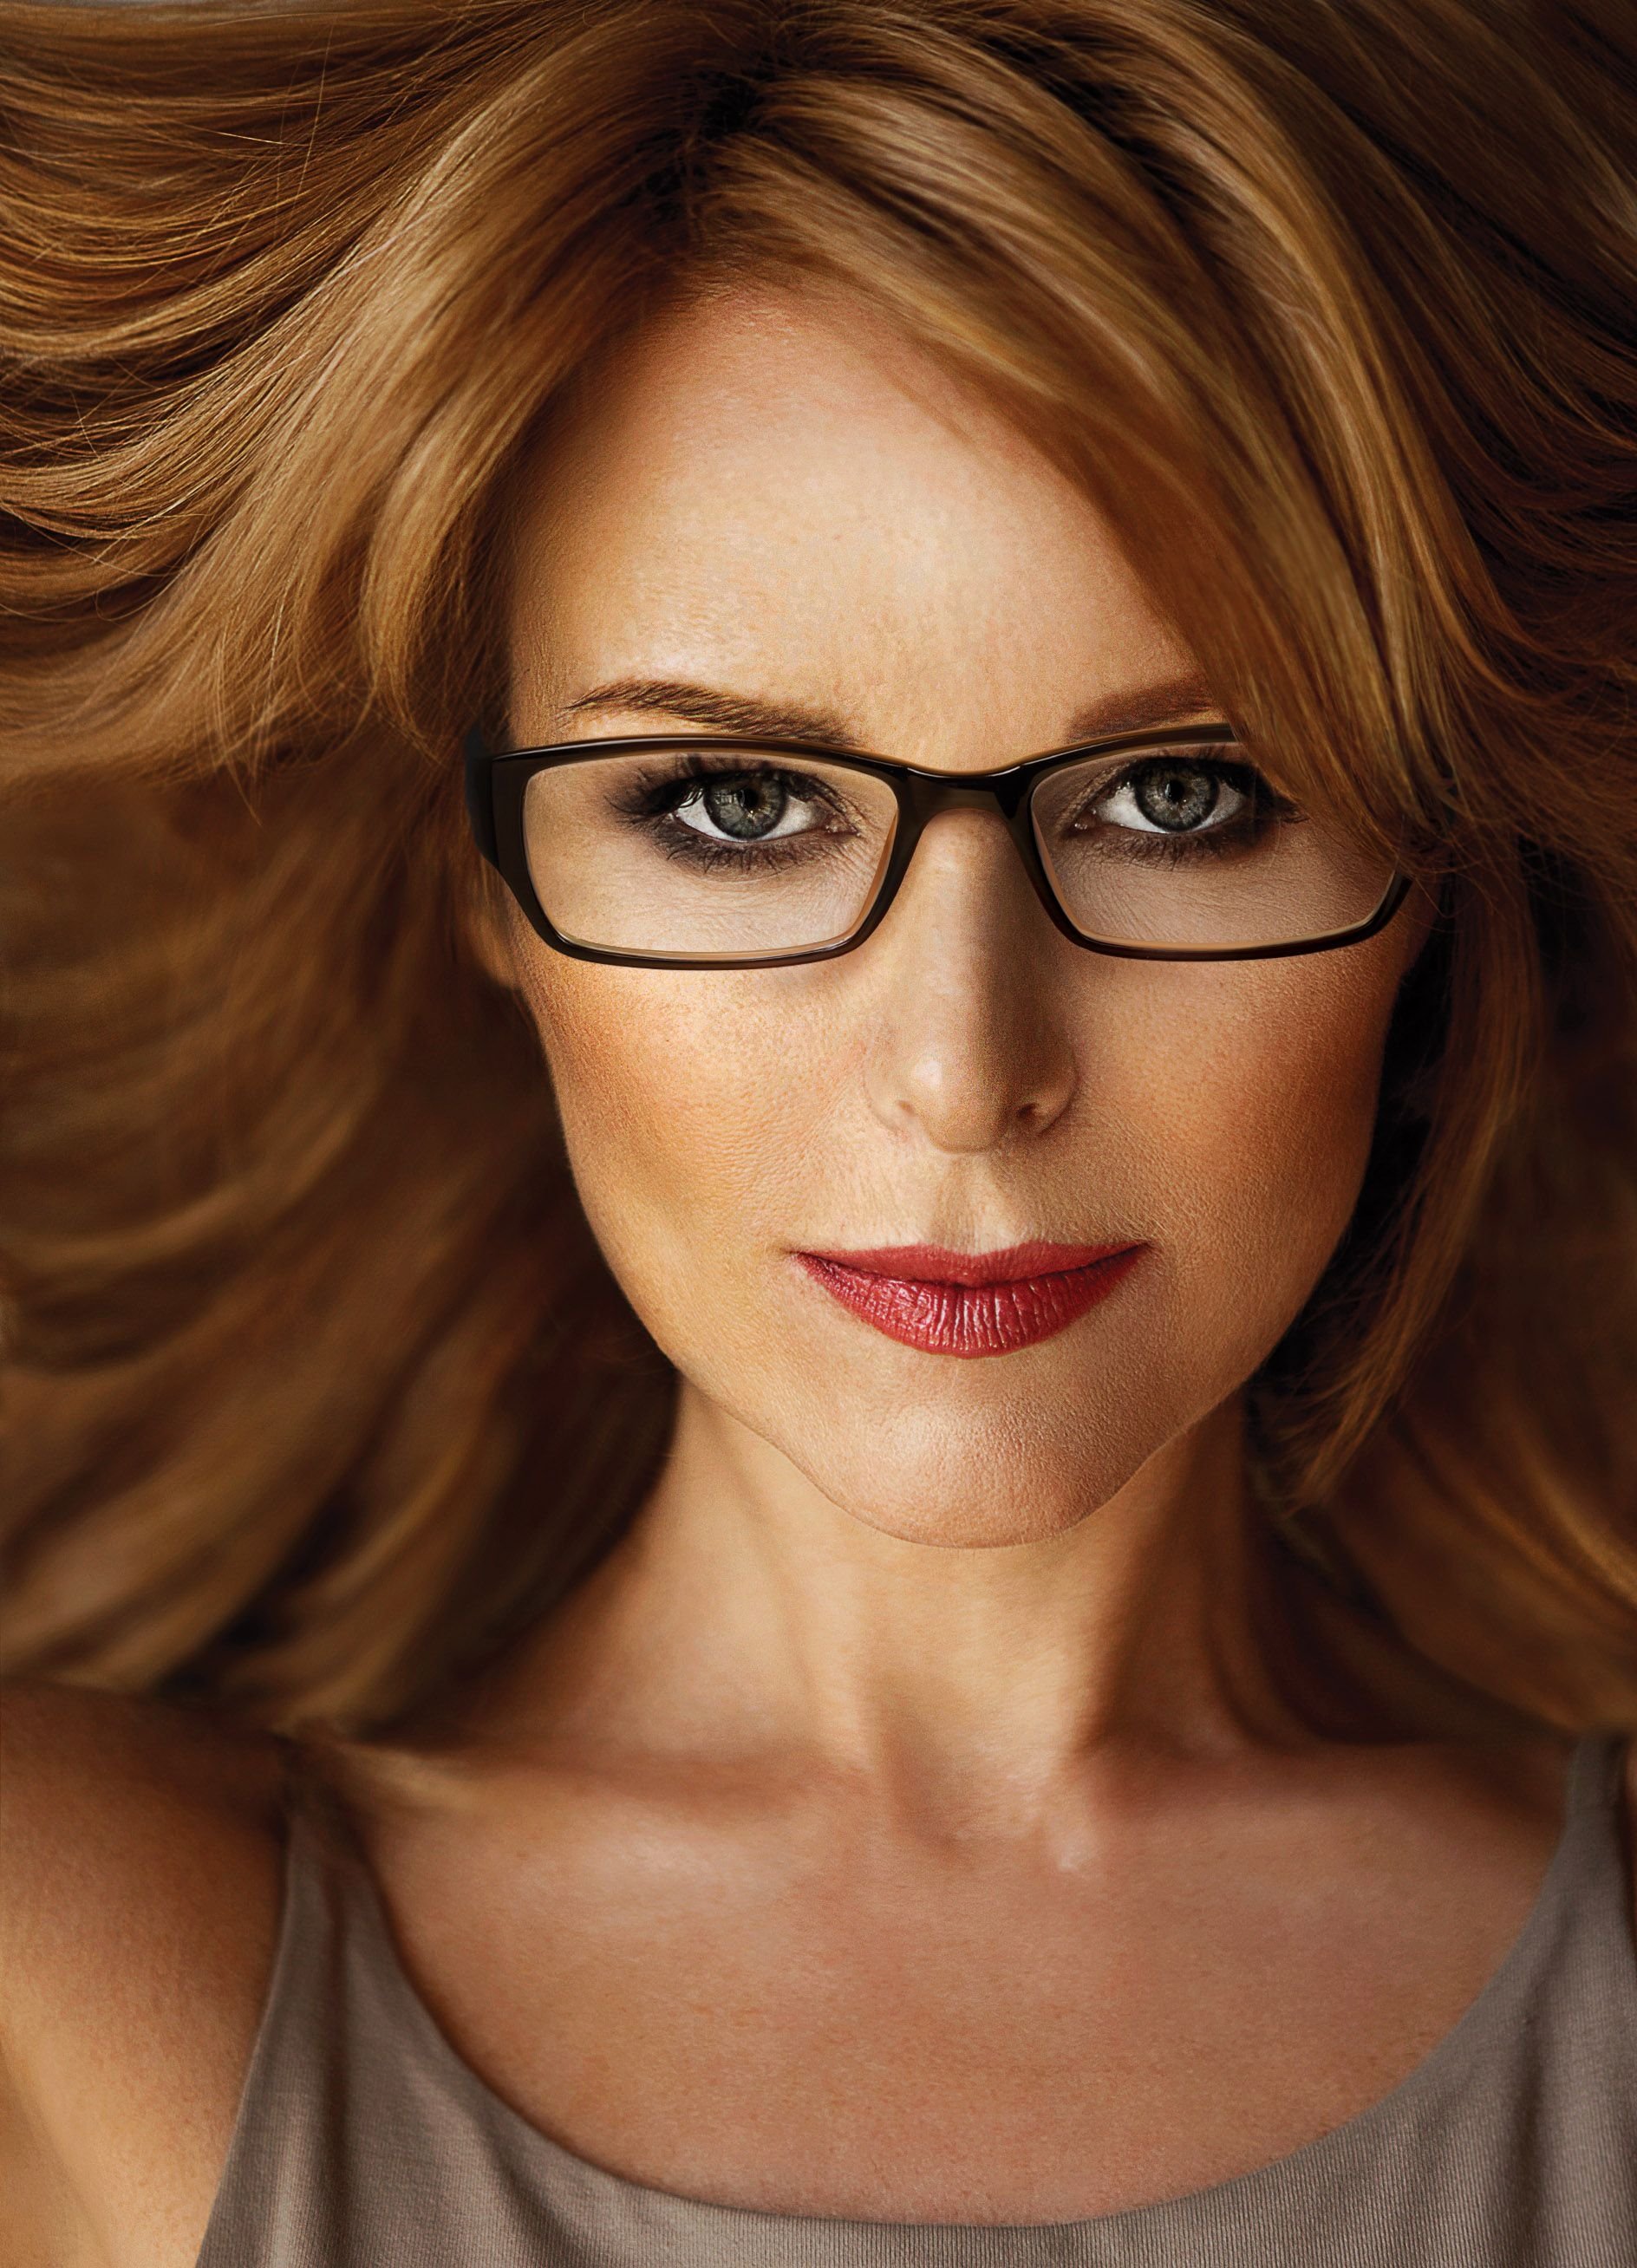 Красивая зрелая в очках. Красивые женщины в очках для зрения. Стильные очки для зрения. Стильные очки для зрения для женщин. Модные оправы для женщин 40 лет.